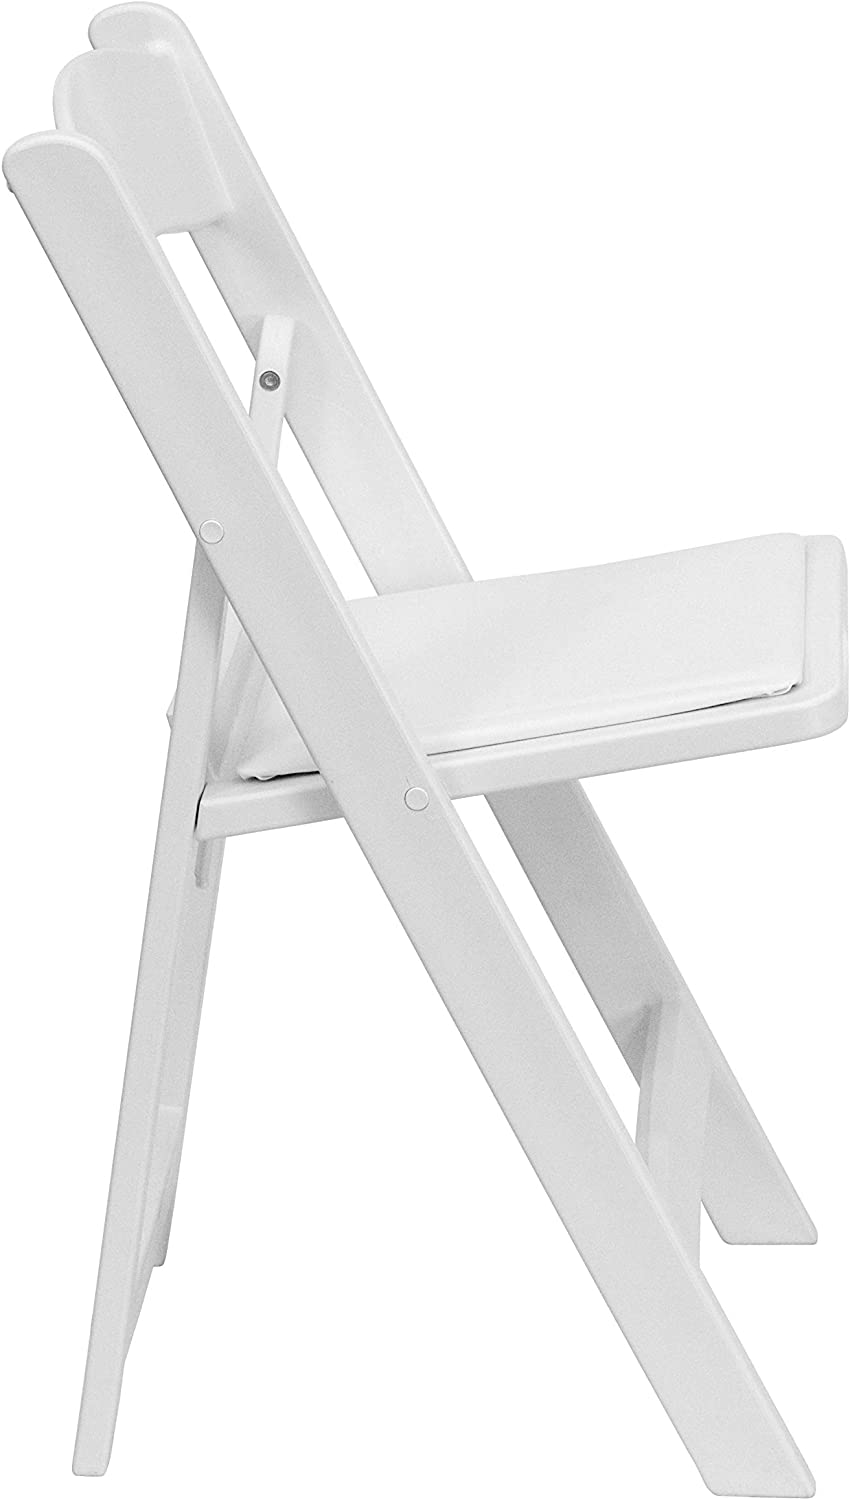 Flash Furniture Hercules√É¬¢√¢‚Ç¨≈æ√Ç¬¢ Series Folding Chair - White Resin - 1000LB Weight Capacity Comfortable Event Chair - Light Weight Folding Chair